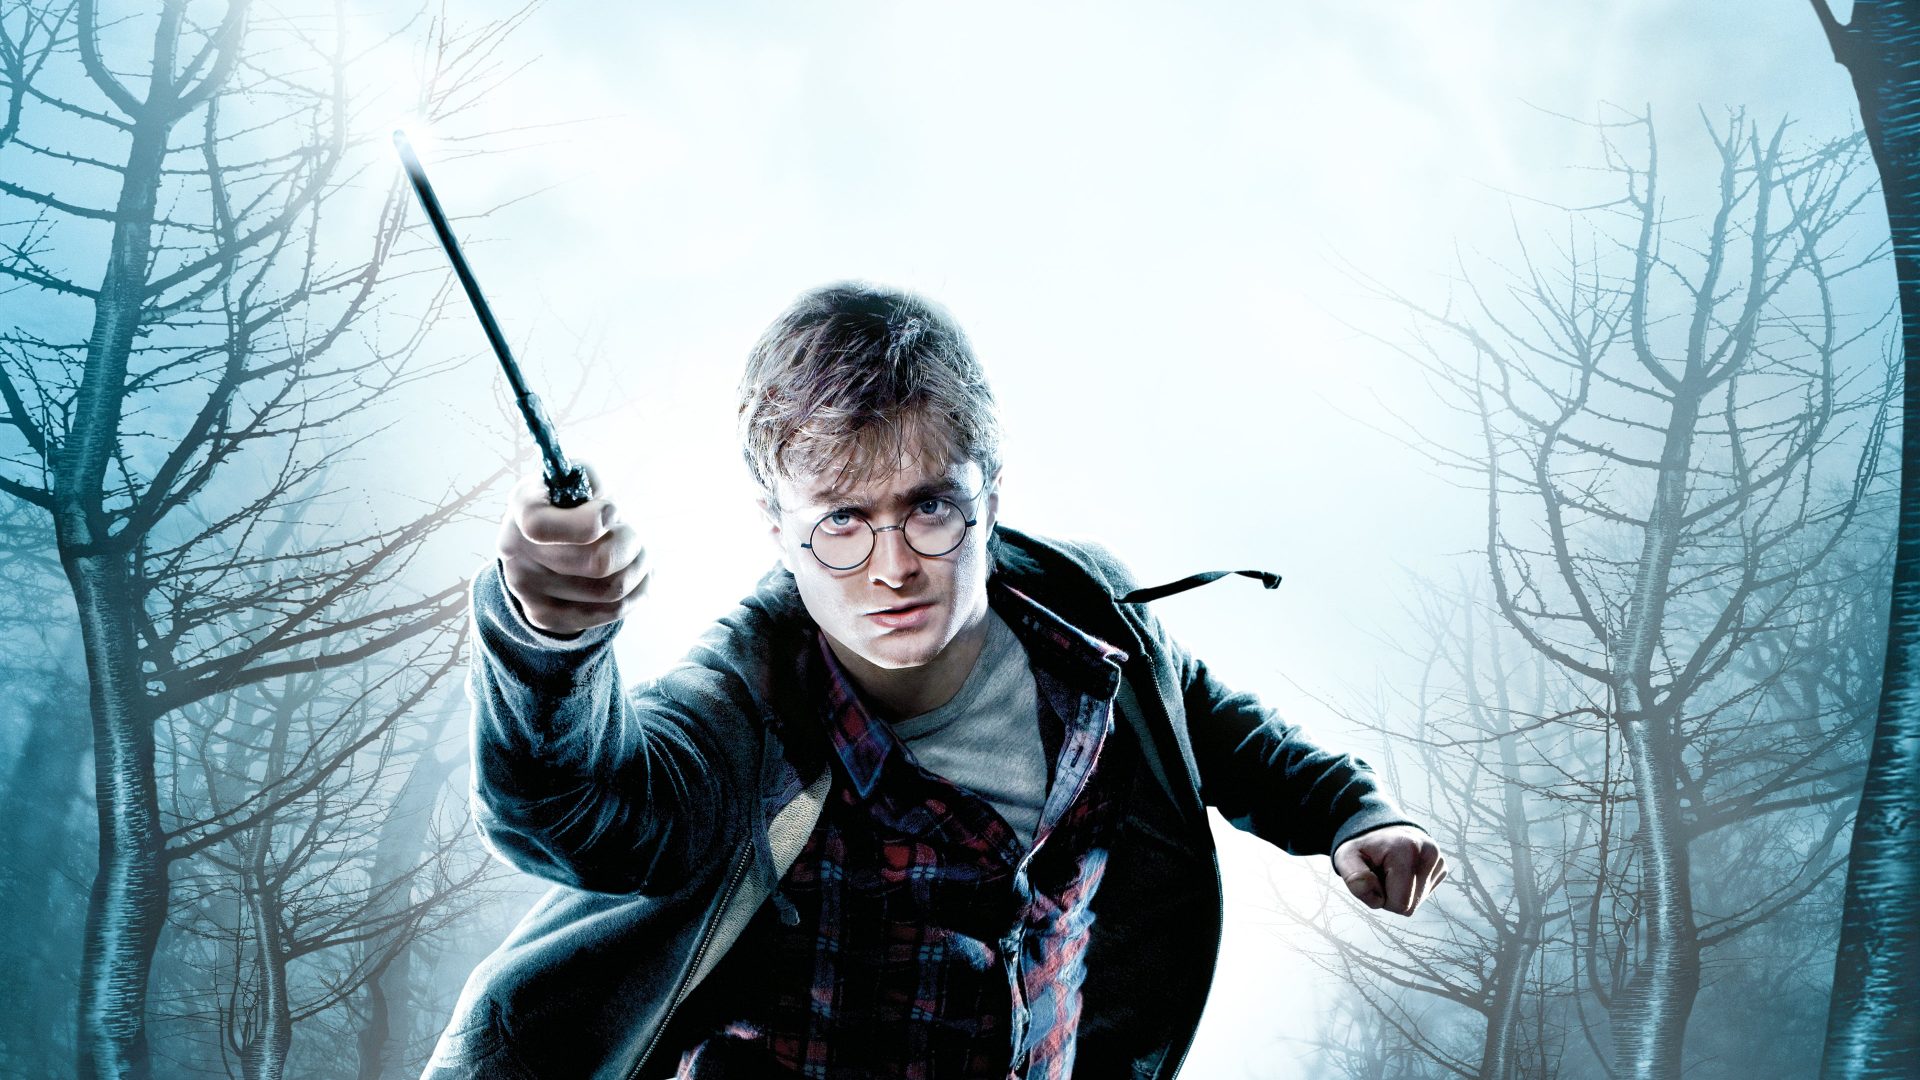 סרטי הארי פוטר לפי הסדר - הארי פוטר ואוצרות המוות